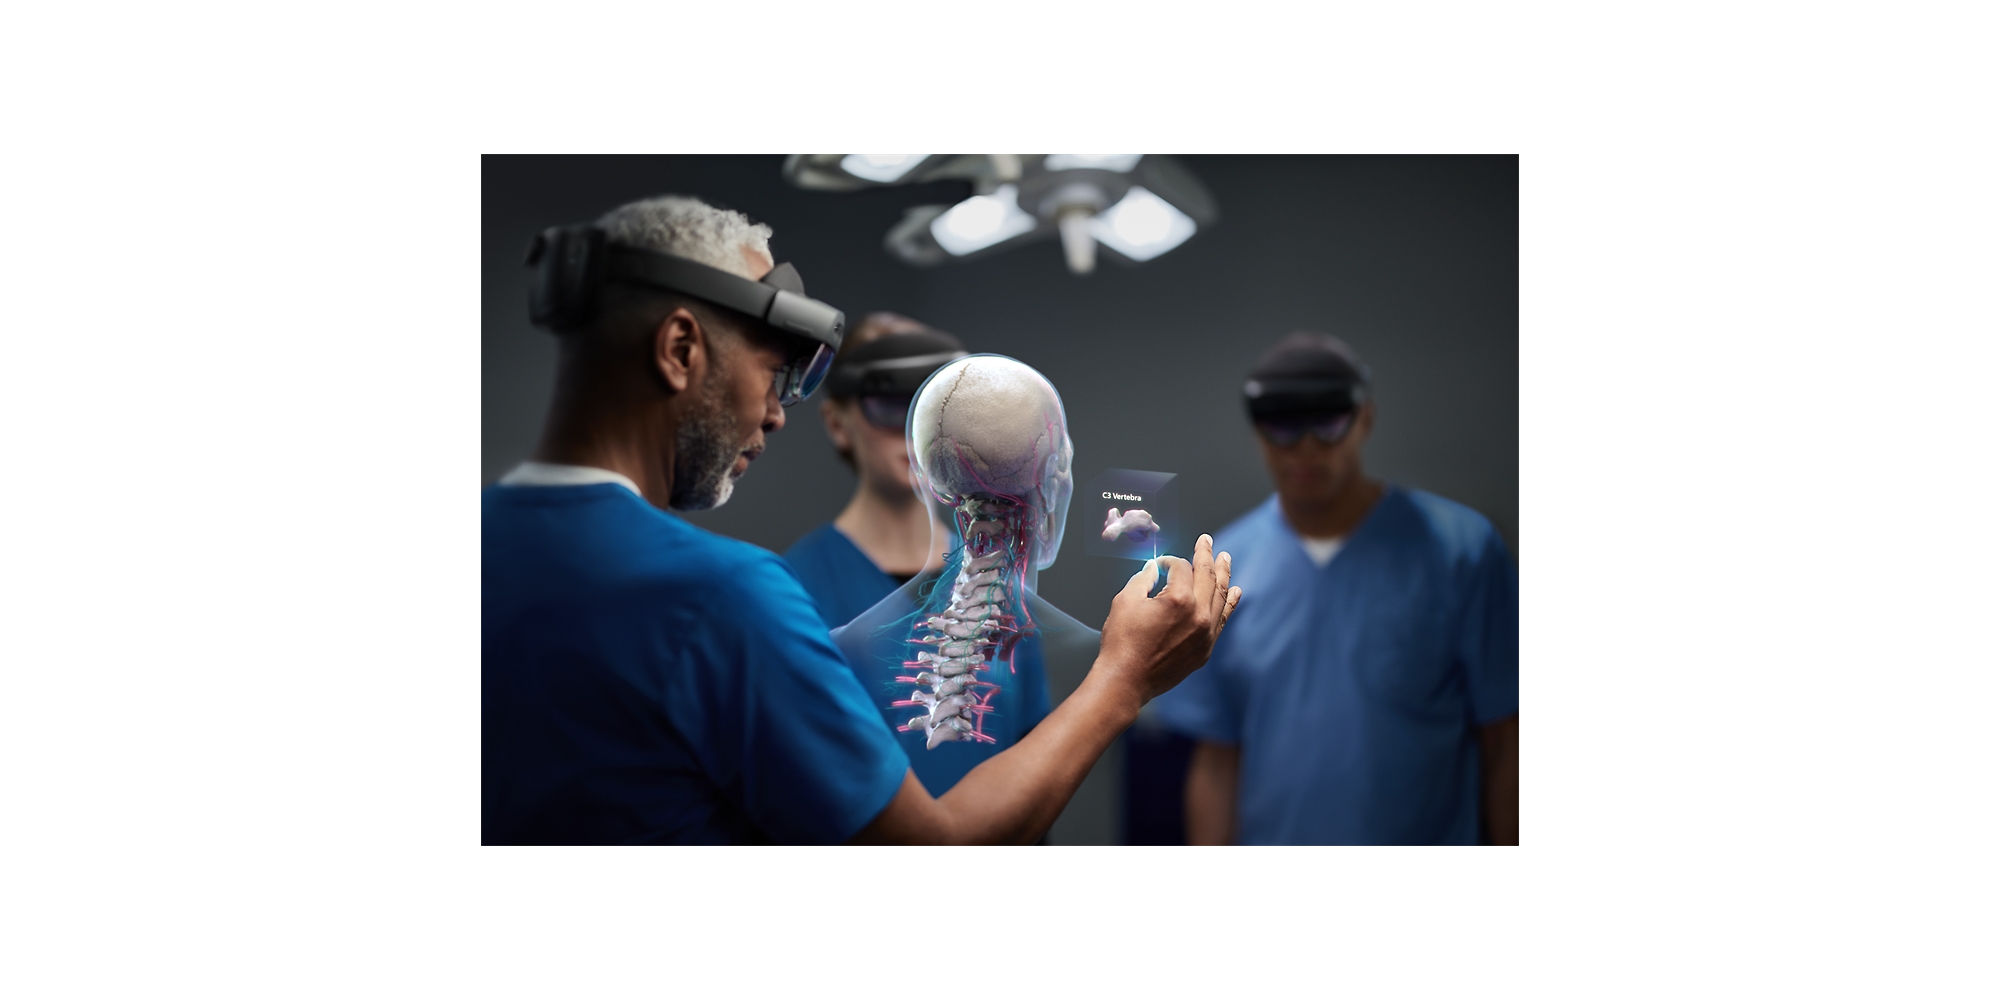 HoloLens 2 デバイスを装着し、人間の脊椎の複合現実図を見ている 3 人の医療専門家。